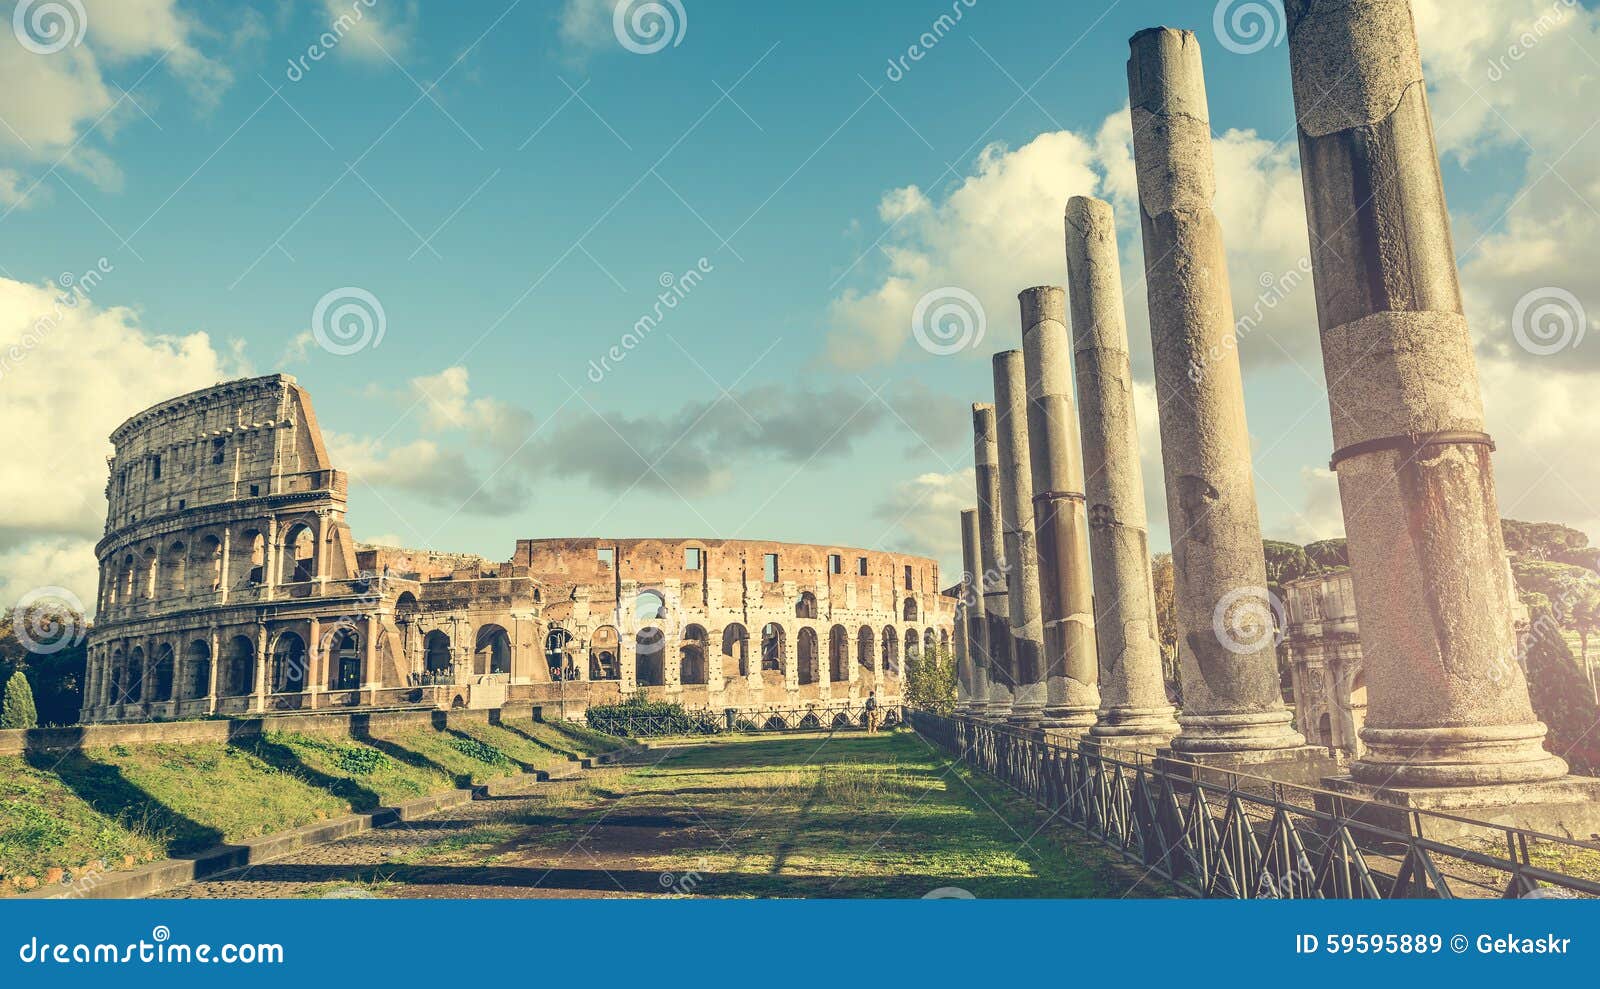 Colunas antigas perto do coliseu. Colunas antigas do templo romano perto do coliseu em Roma